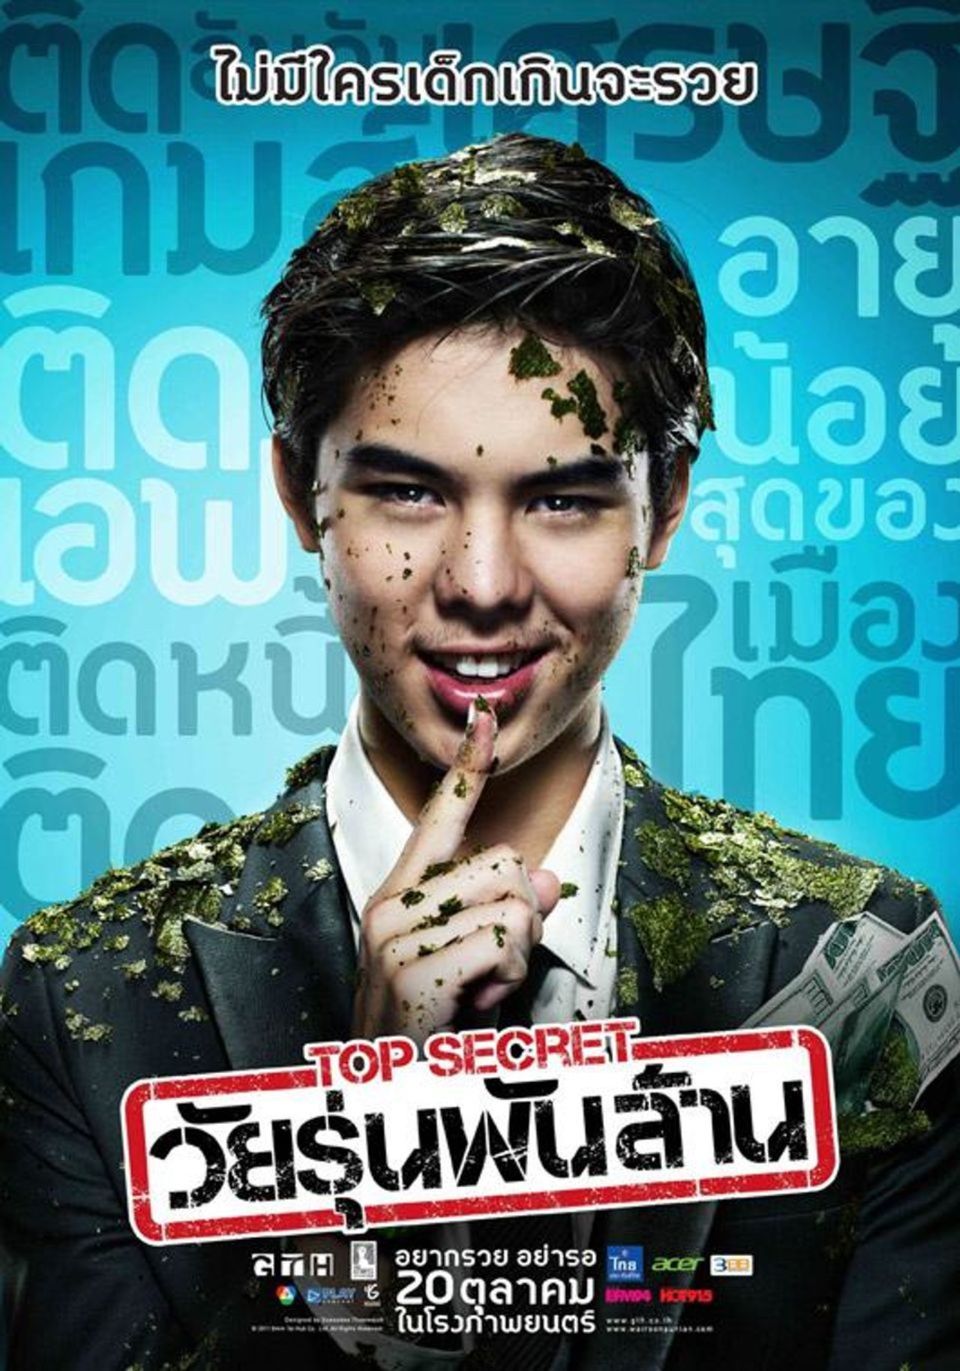 ภาพยนตร์ไทย “TOP SECRET วัยรุ่นพันล้าน” (THE BILLIONAIRE)